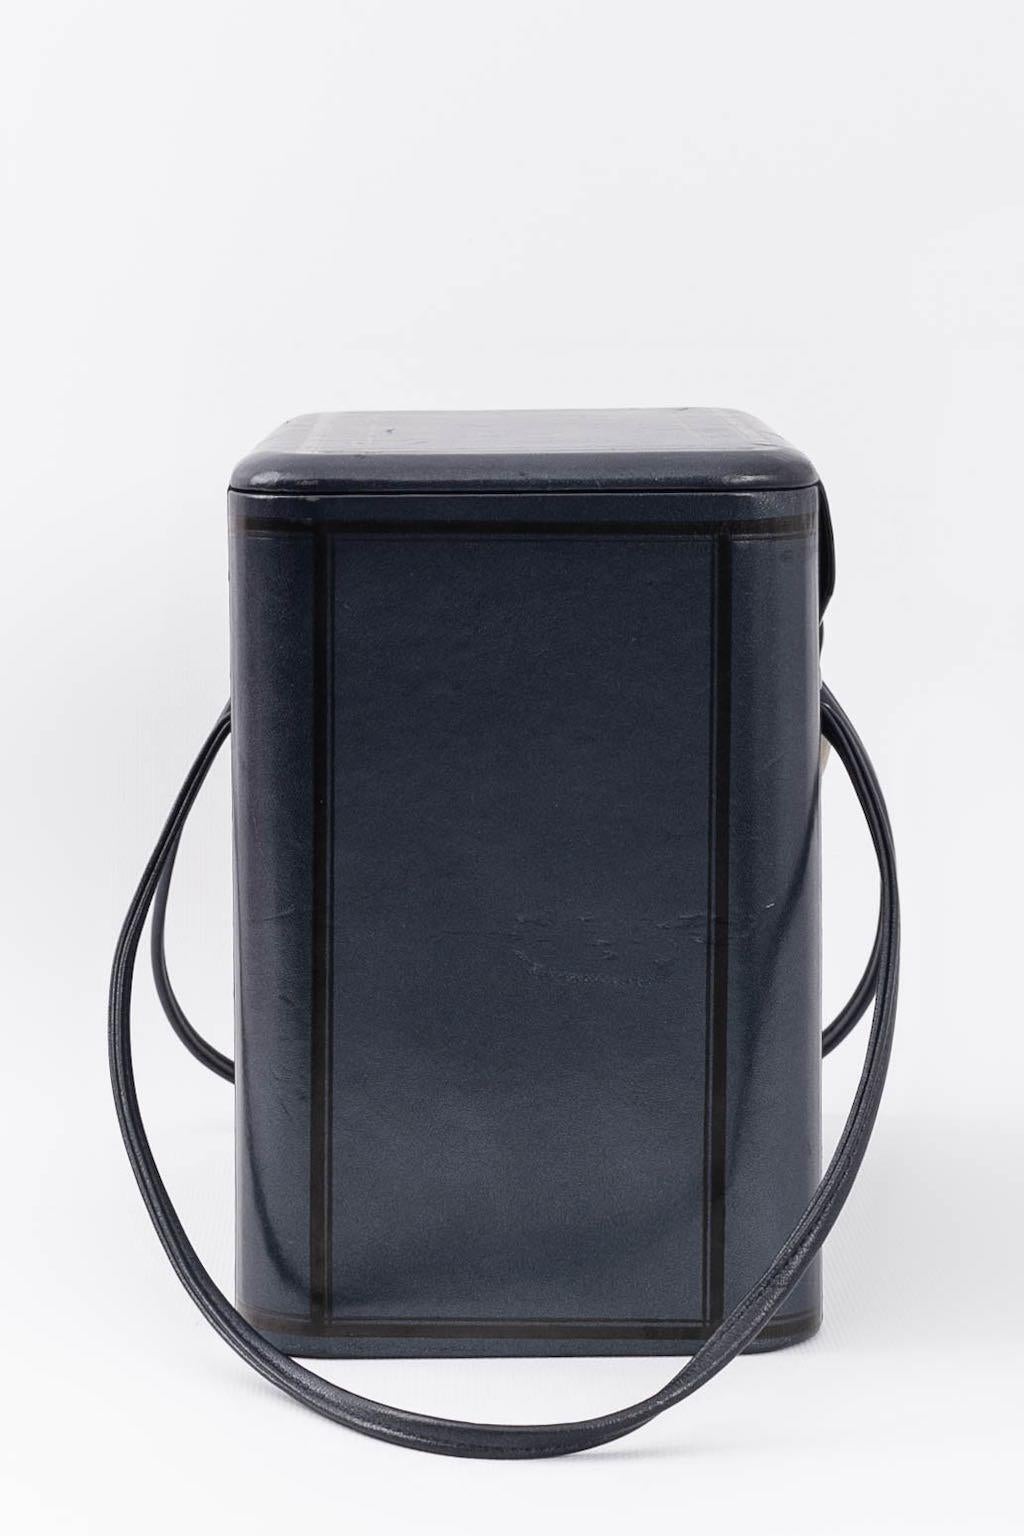 Chantal Thomass - Sac « Box » en cuir bleu, automne 1986 Excellent état - En vente à SAINT-OUEN-SUR-SEINE, FR